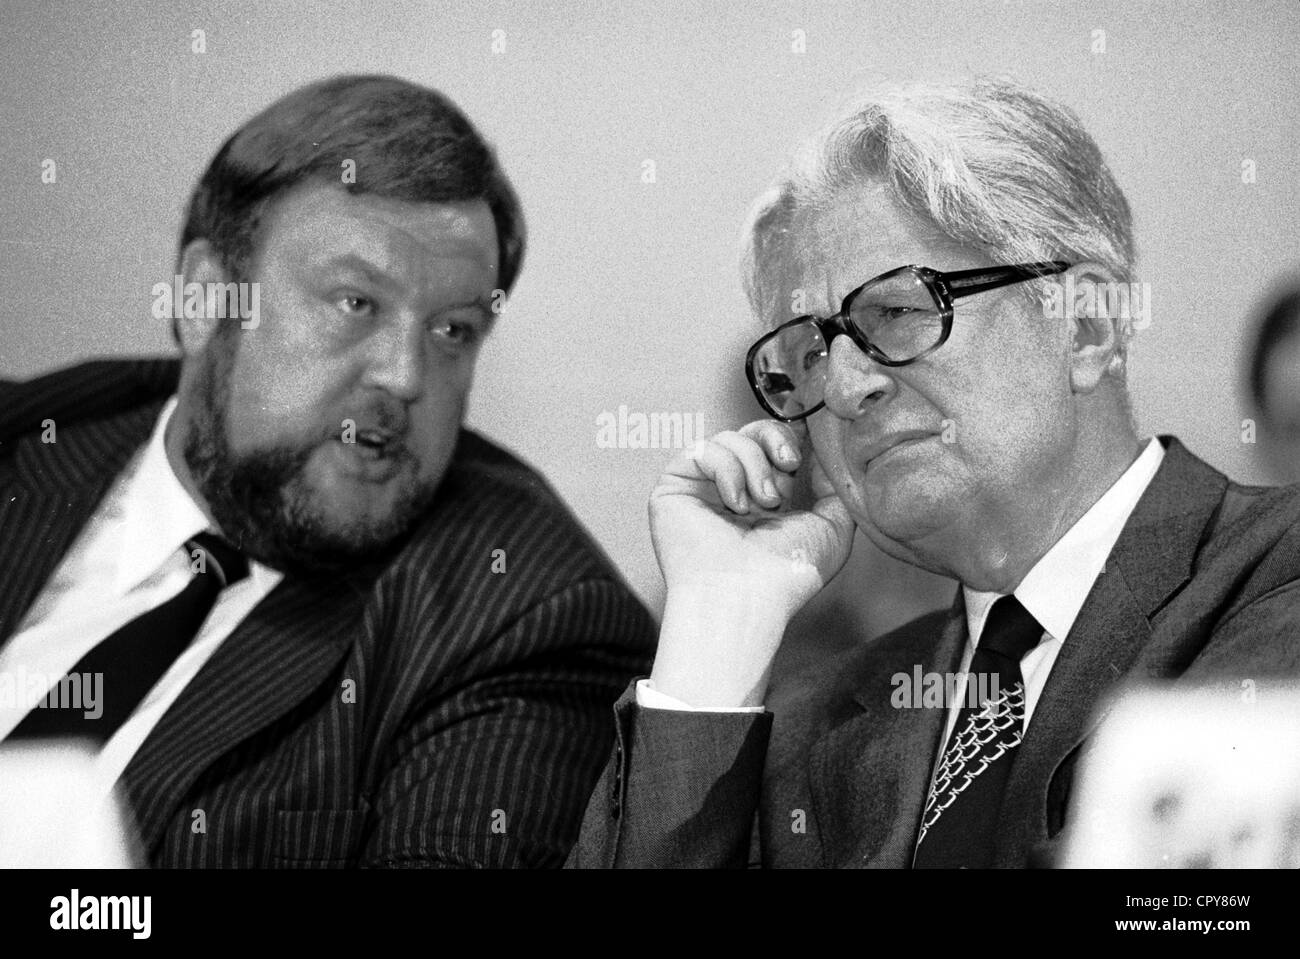 Hiersemann, Karl-Heinz, 17.8.1944 - 15.7.1998, deutscher Politiker (SPD), halbe Länge, mit Jochen Vogel, 1987, Stockfoto